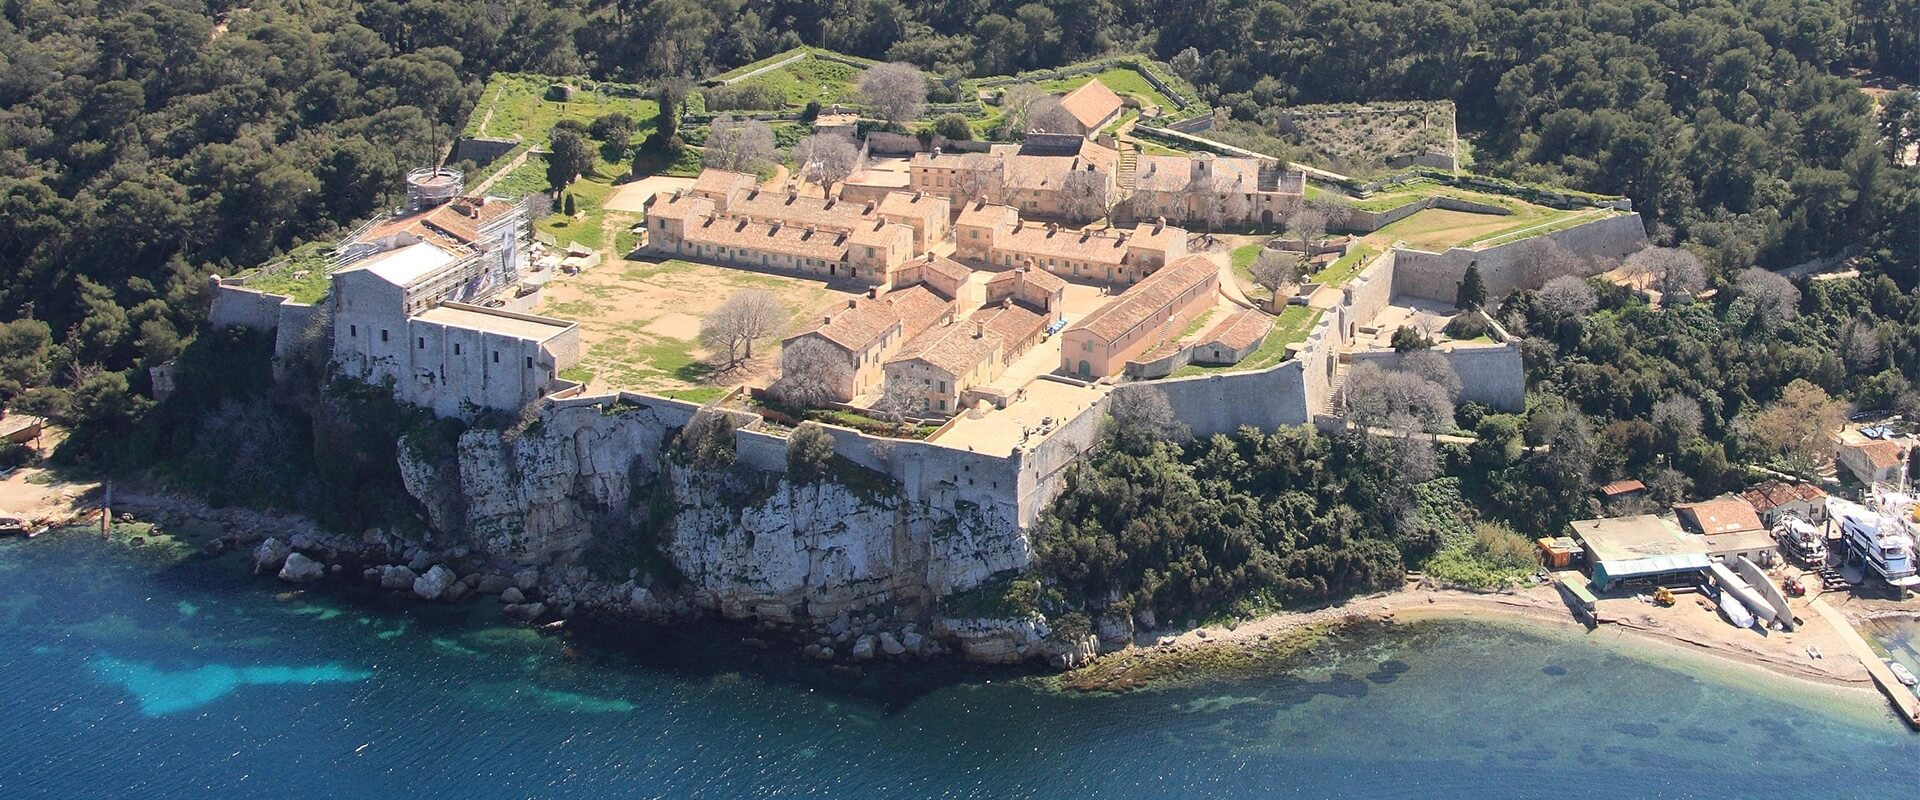 Fort Royal De L'île Saint Marguerite, Région Sud, France pour R2Gion France